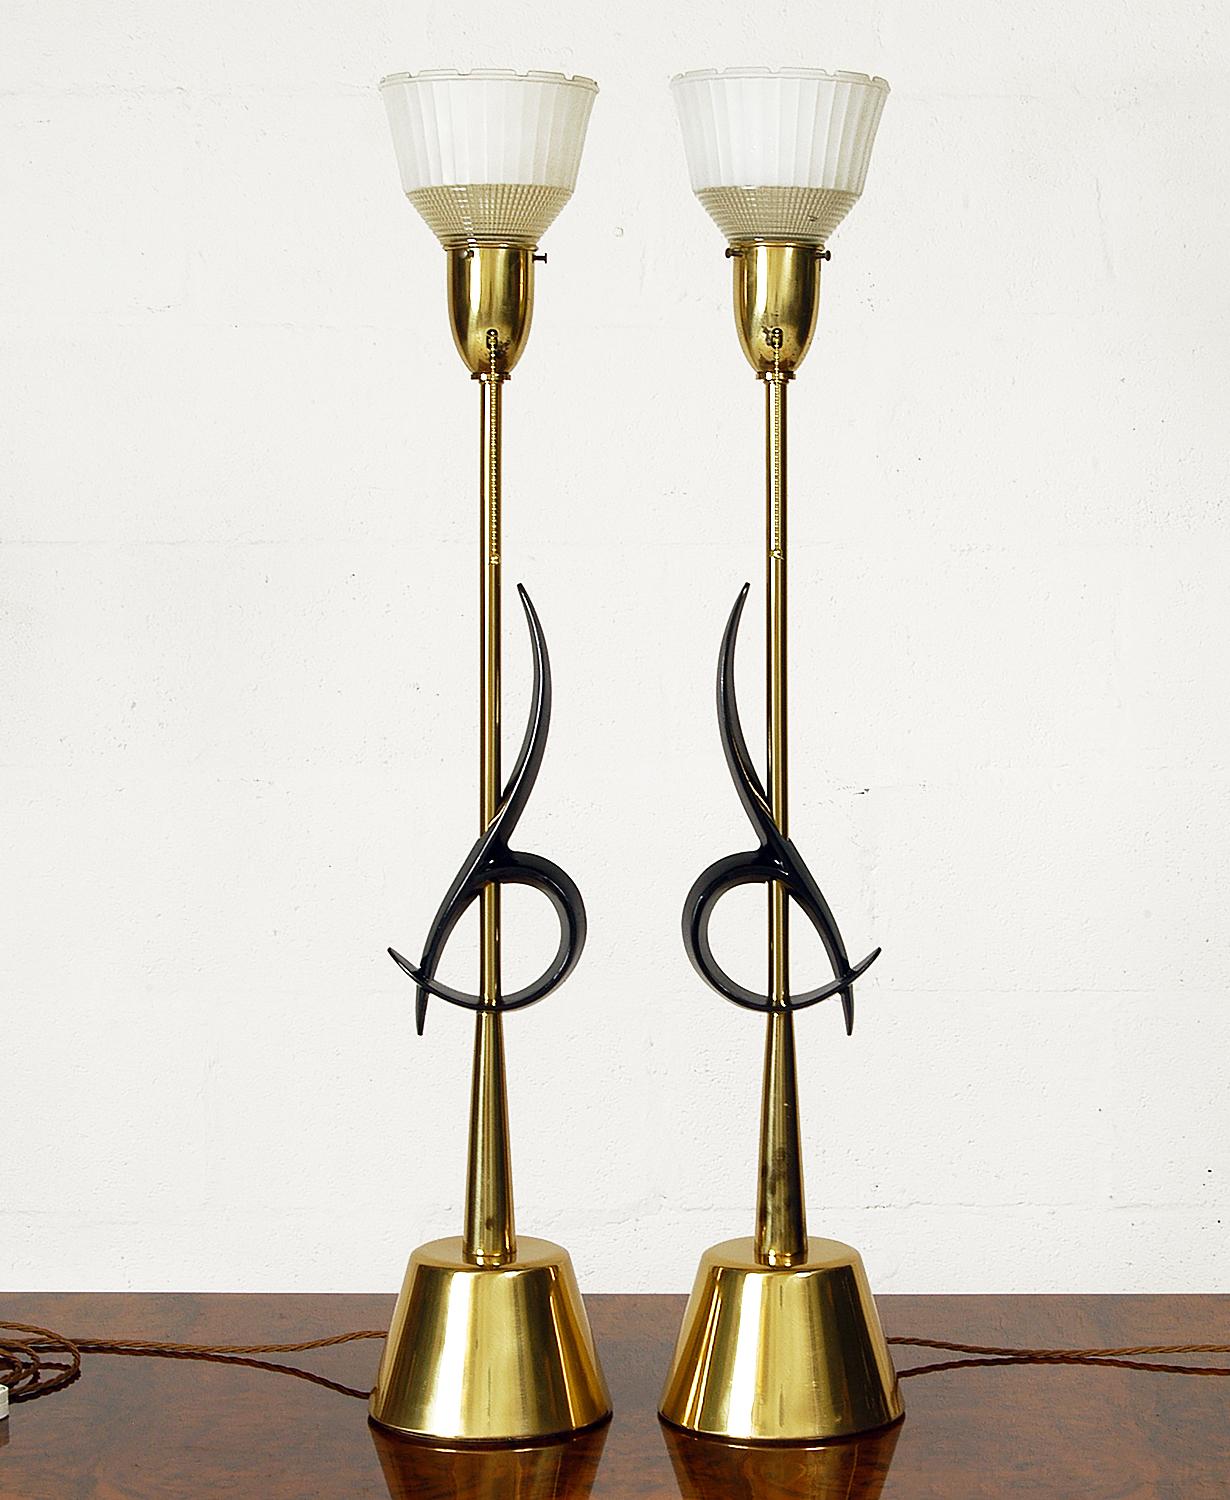 Ein spektakuläres Paar großer Tischlampen, entworfen und hergestellt von der Rembrandt Lamp Company in Chicago. Mit einer Höhe von 95 cm sind diese beeindruckenden Lampen ein Klassiker des amerikanischen Mid-Century Modern.
Sockel und Stiel sind